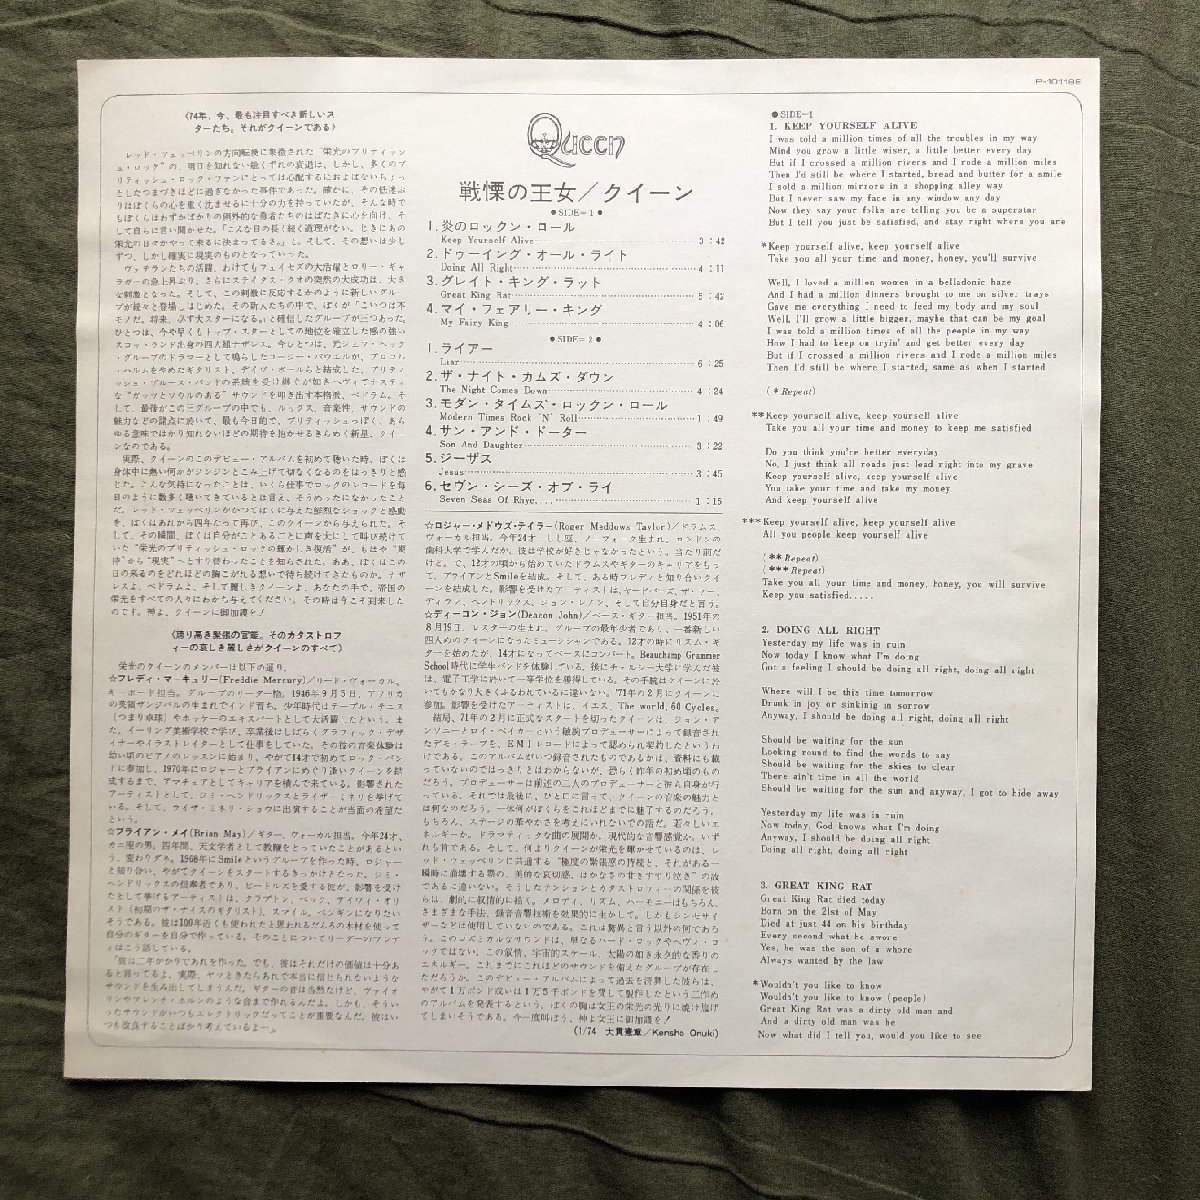 良盤 1976年 国内初盤 クイーン Queen LPレコード 戦慄の王女 Queen 名盤 帯付 Freddie Mercury, Brian May デビューアルバム_画像6